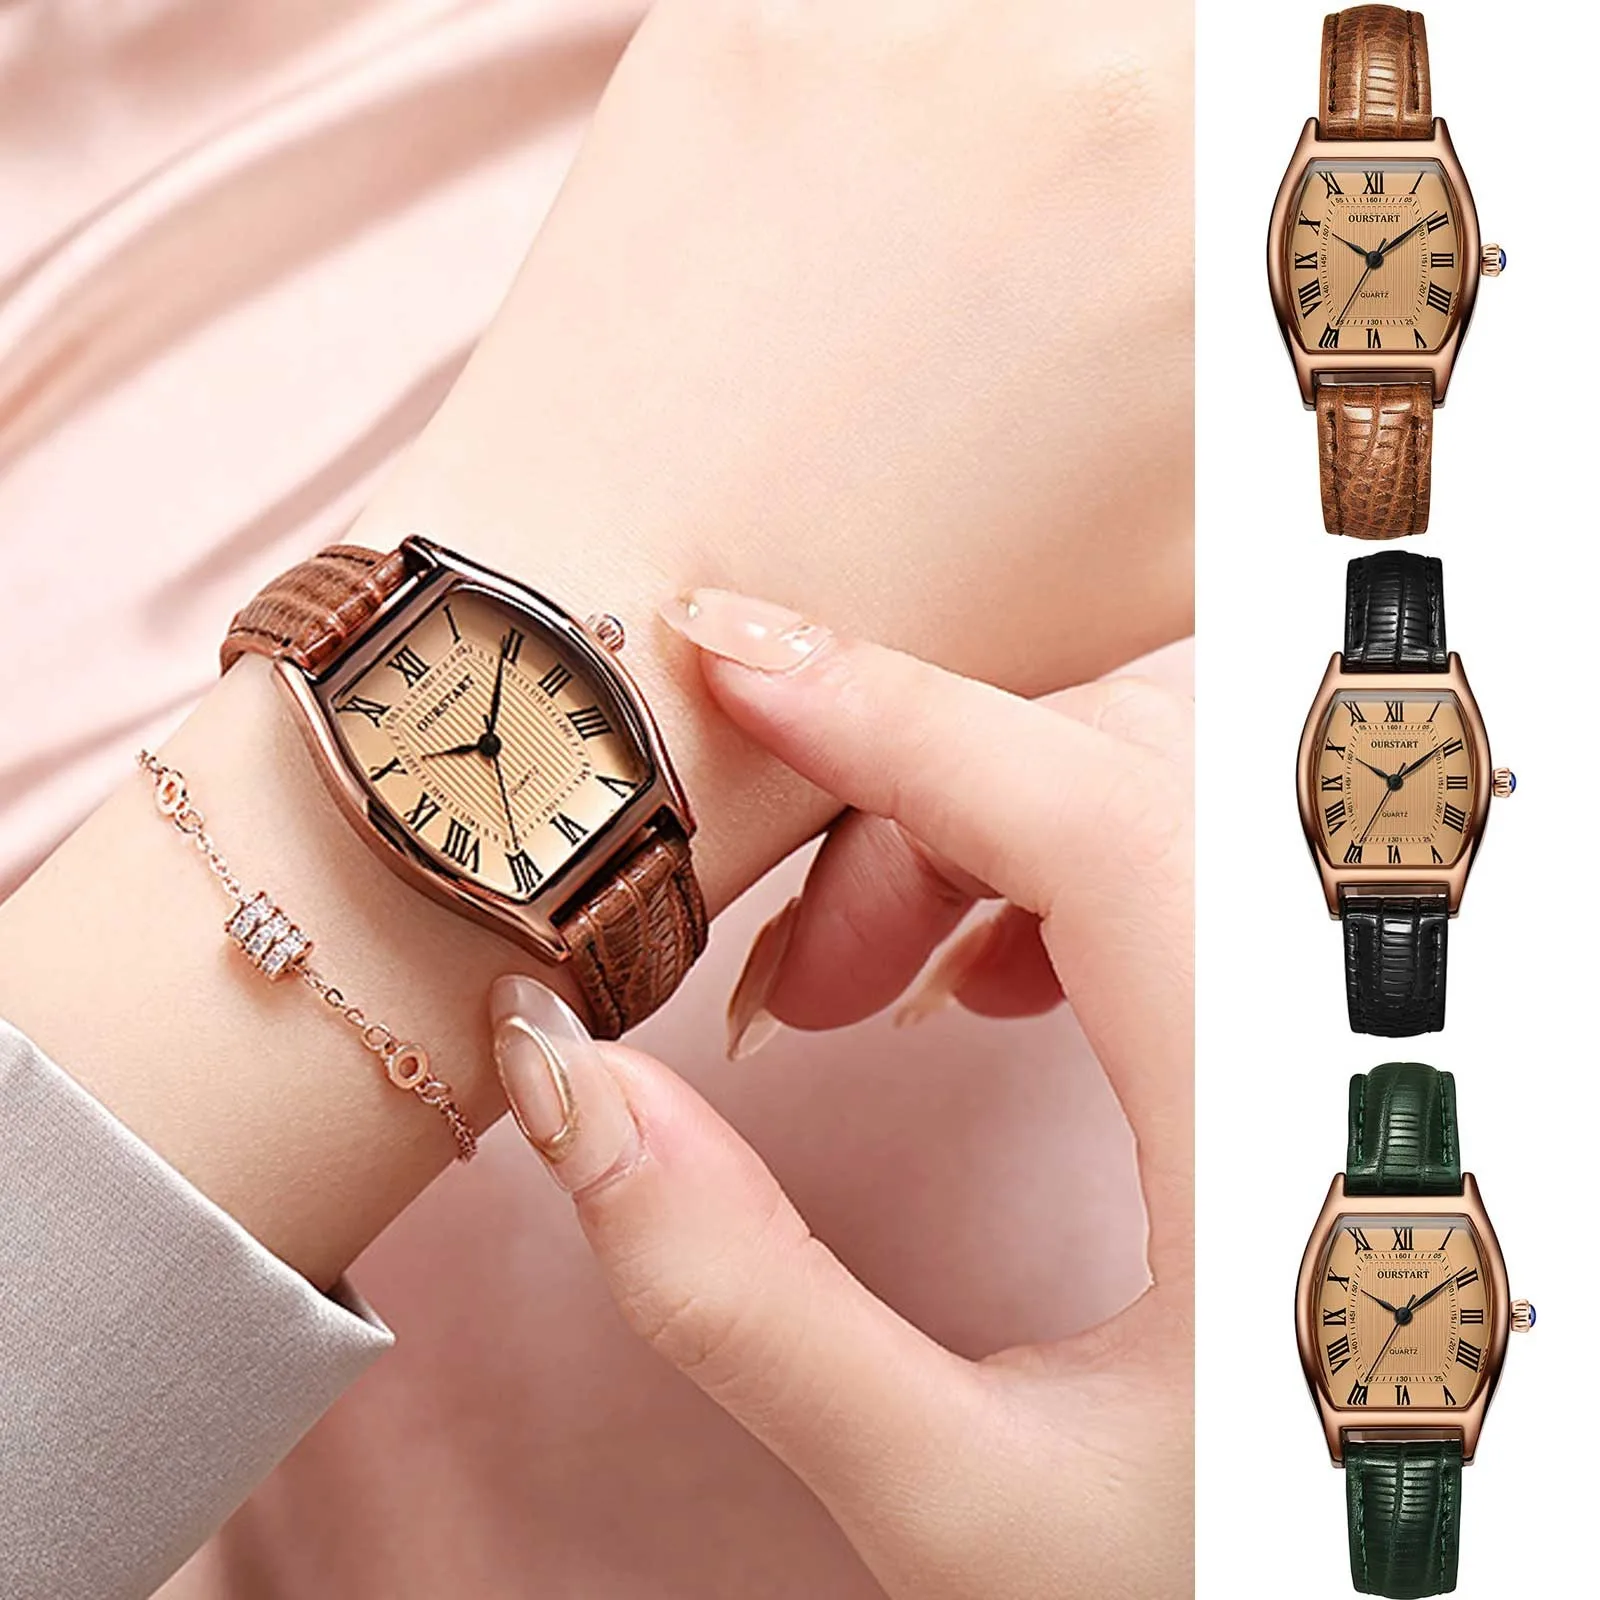 

Luxury Montre Femme Women Watches Luminous Hand Wind Leather Strap Winner Watch Fashion Quartz Wristwatches Montres Femmes